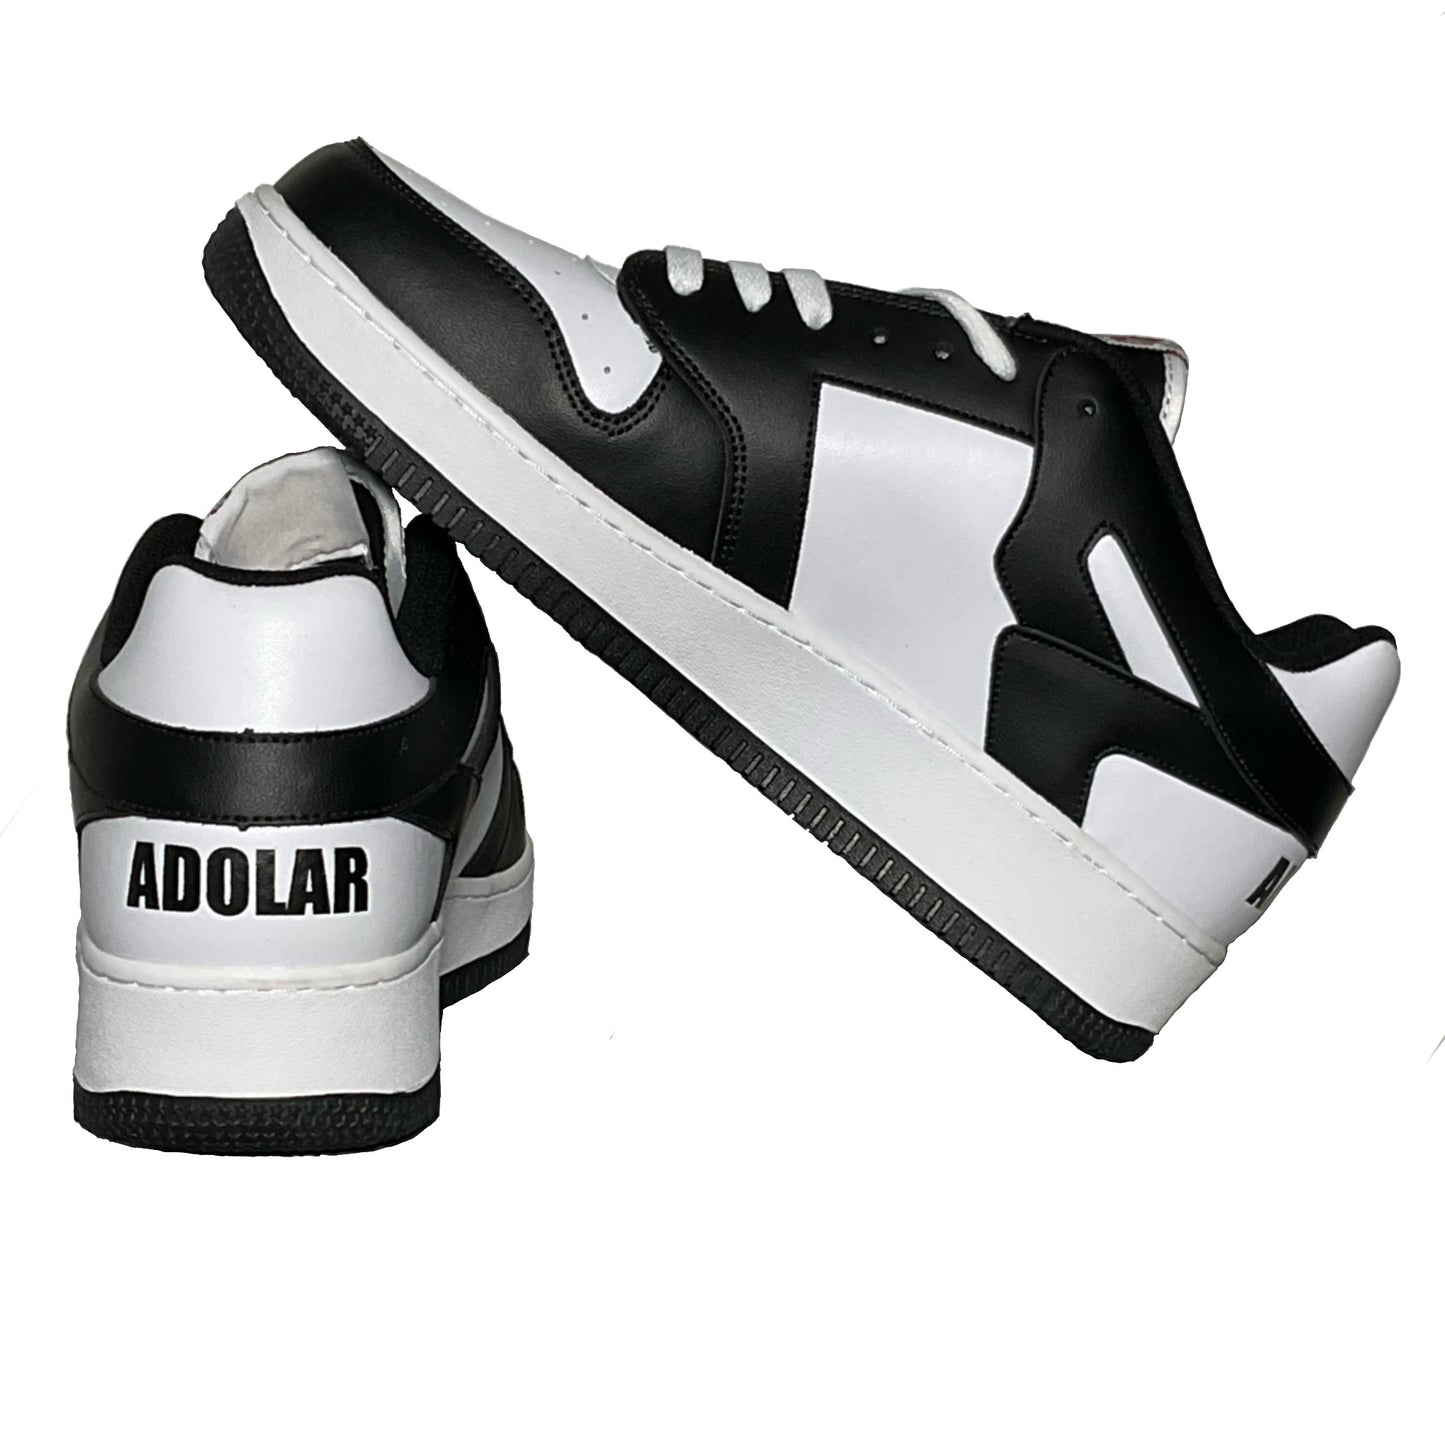 Adolar “Oreo” Sneakers